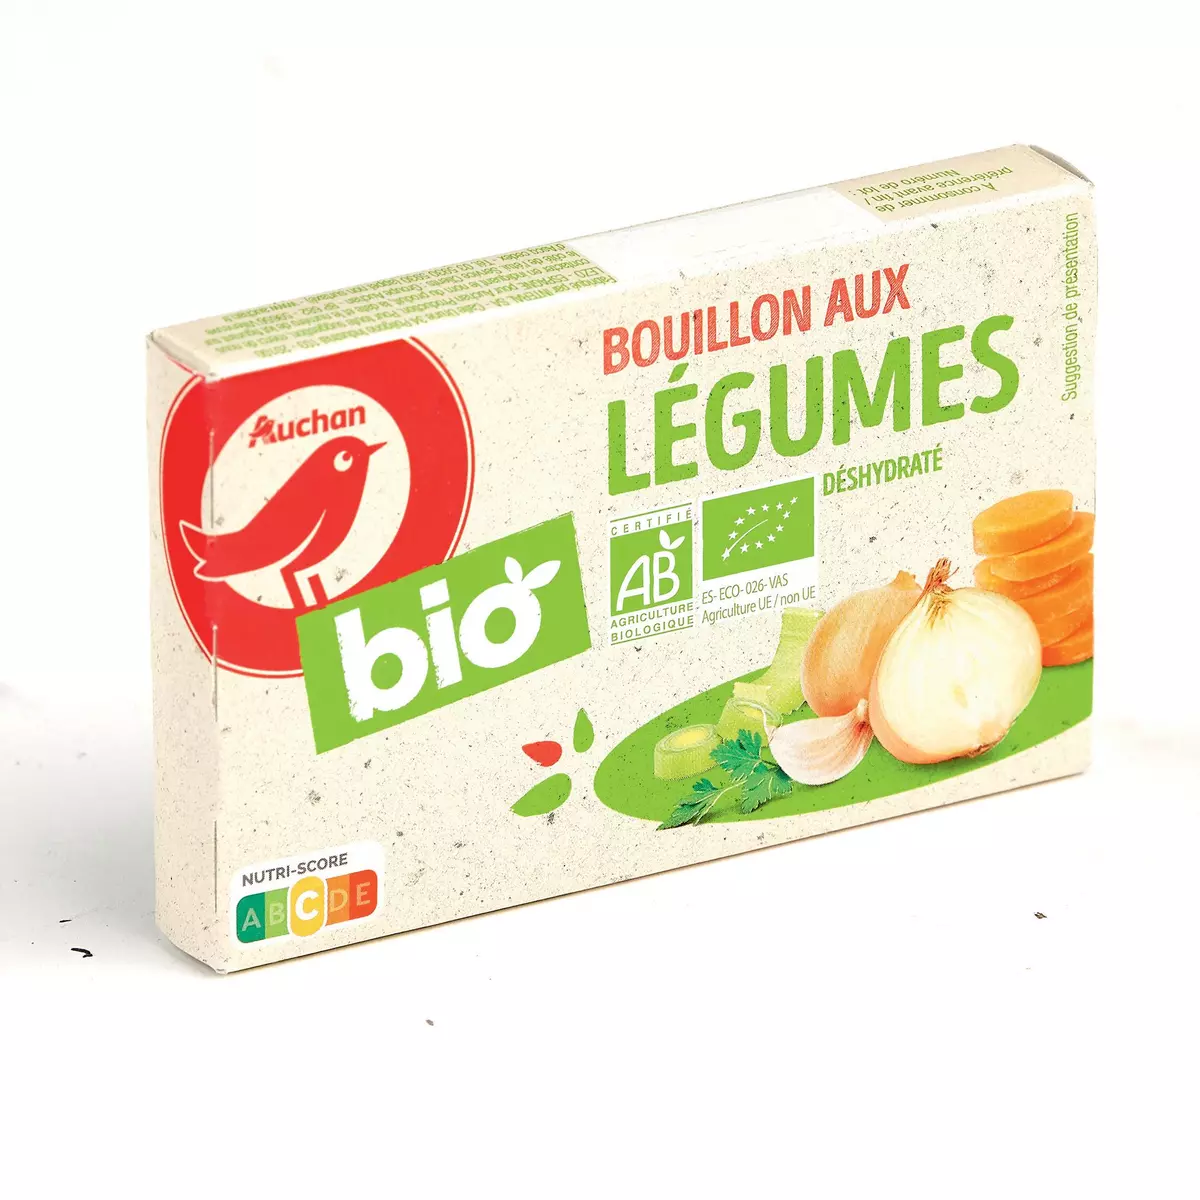 AUCHAN BIO Bouillon aux légumes et aromates 8 tablettes 80g